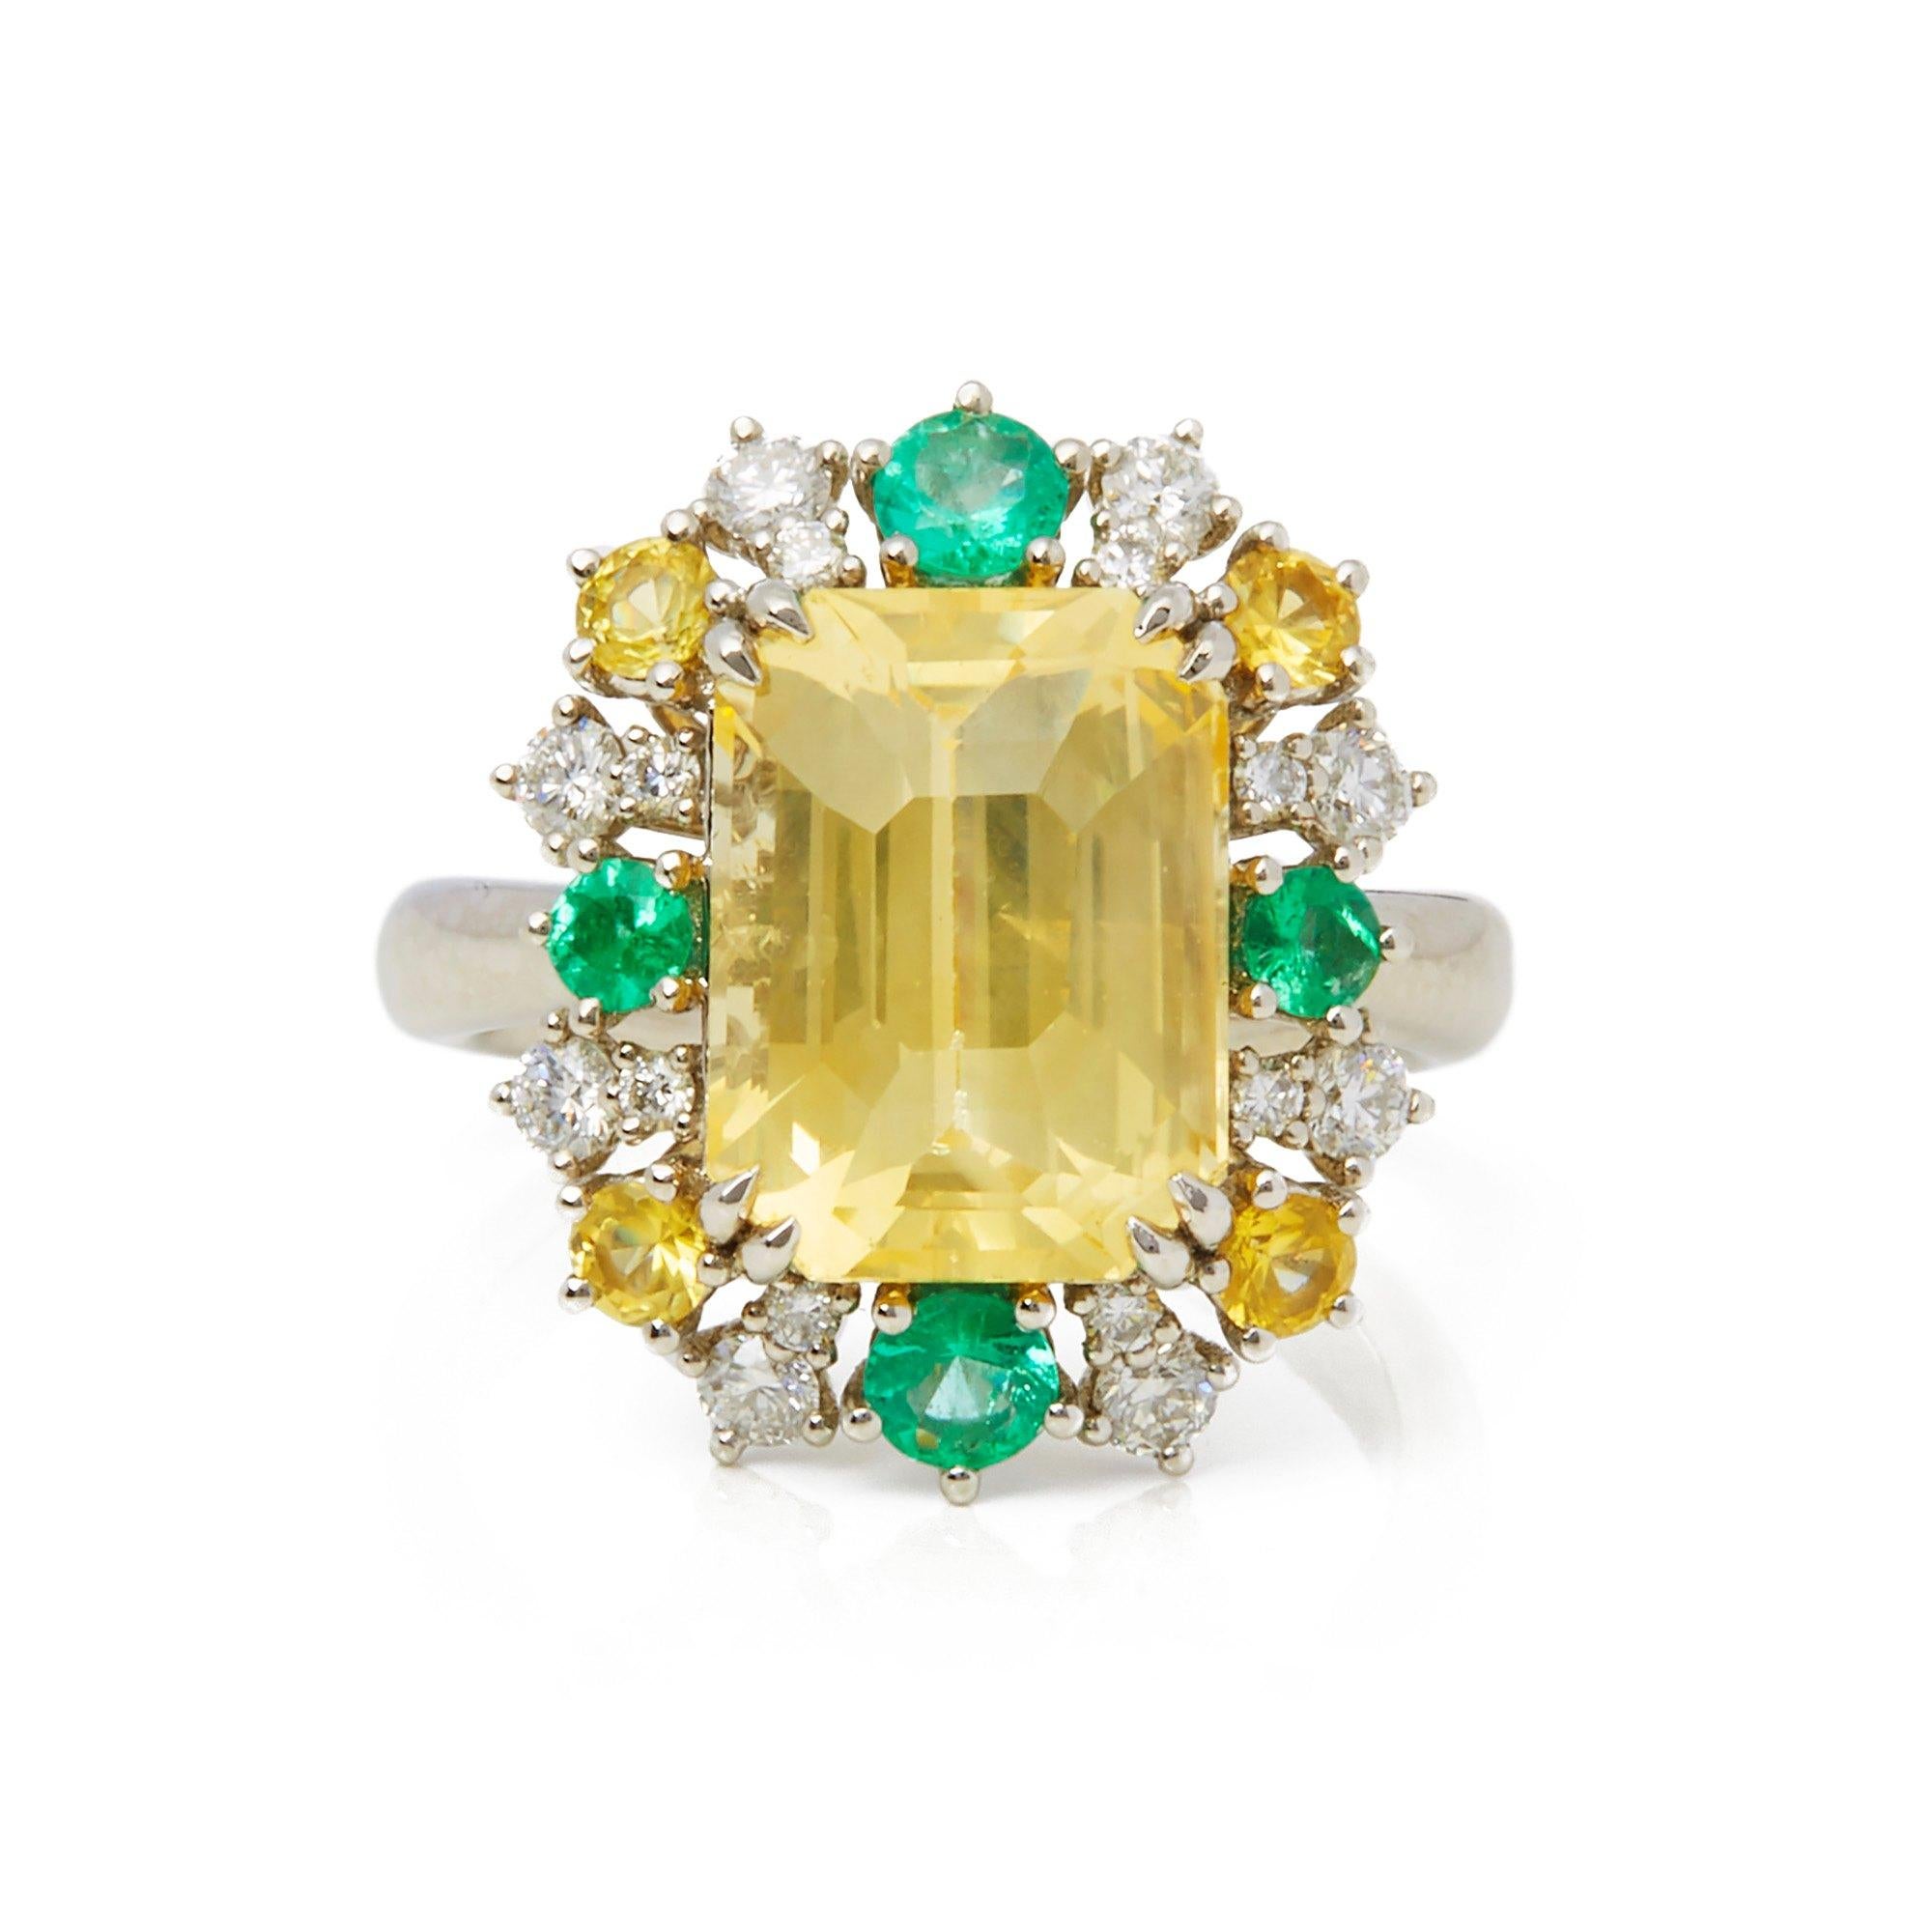 Dieser von David Jerome entworfene Ring stammt aus seiner privaten Sammlung und enthält einen unbehandelten gelben Saphir im Smaragdschliff, der in Sri Lanka gewonnen wurde. Insgesamt 8,08cts, besetzt mit runden Diamanten im Brillantschliff von